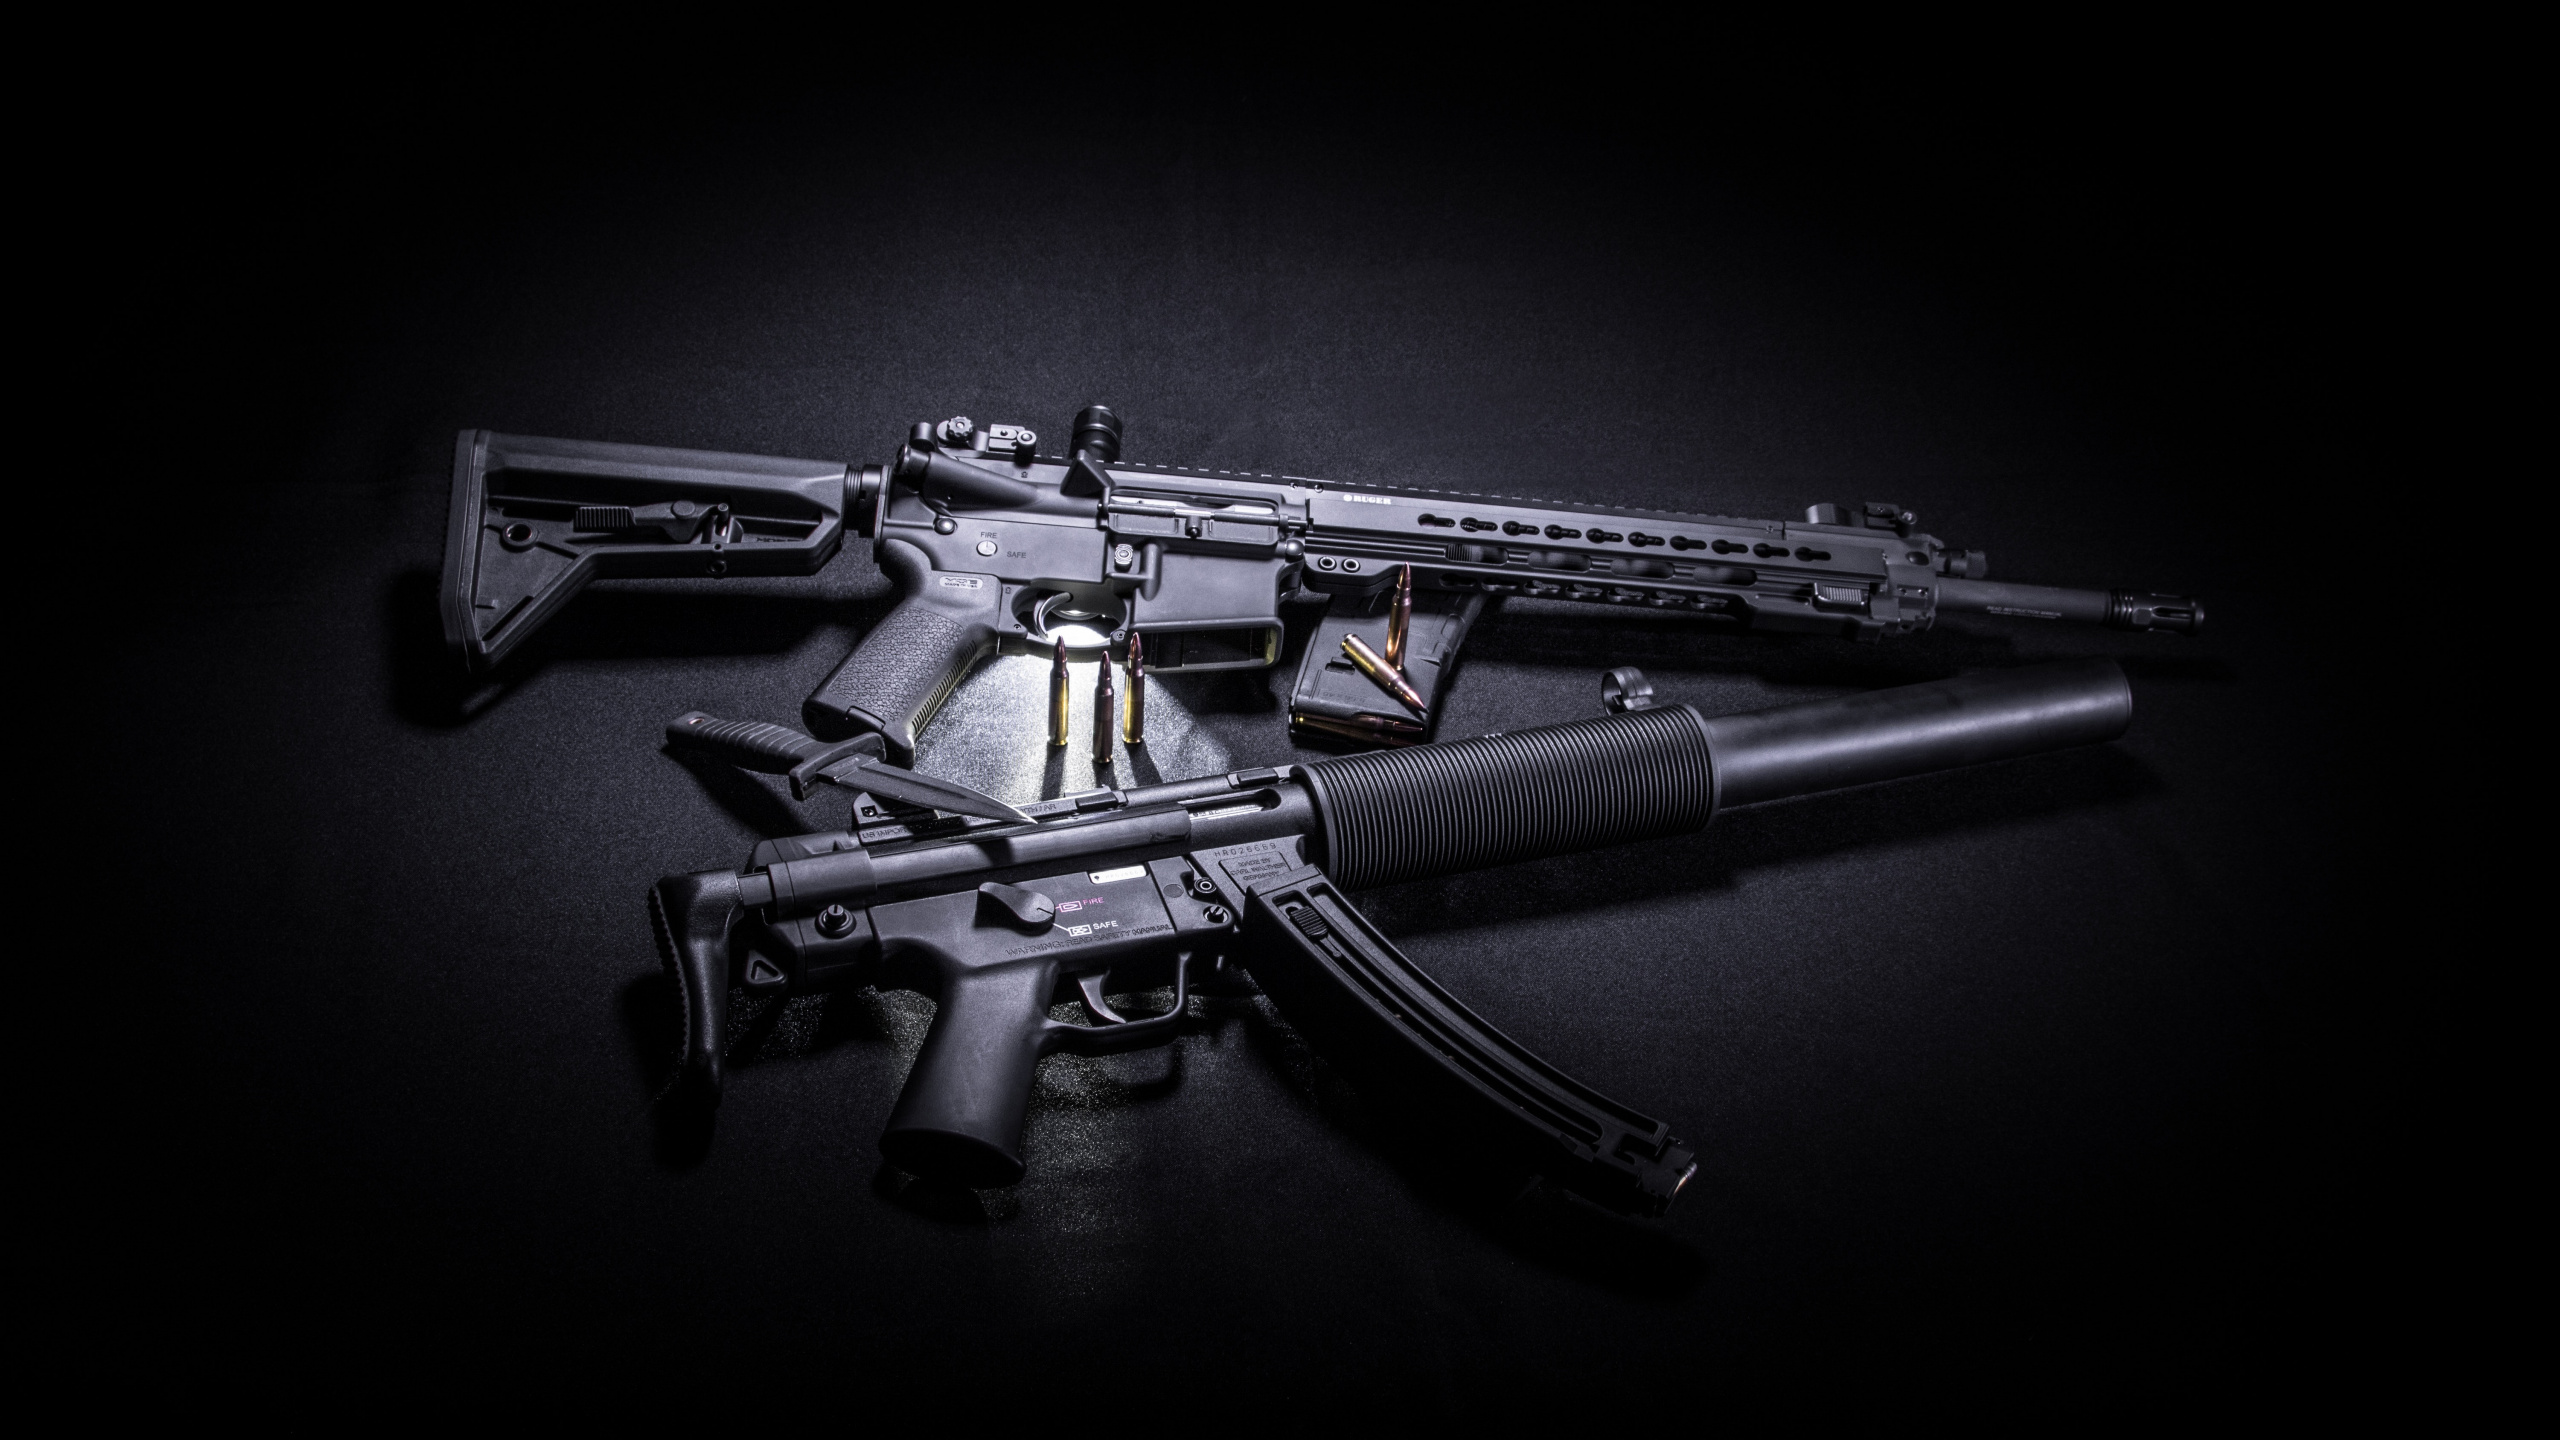 Feuerwaffe, STURMGEWEHR, Trigger, Gun Barrel, Maschinengewehr. Wallpaper in 2560x1440 Resolution